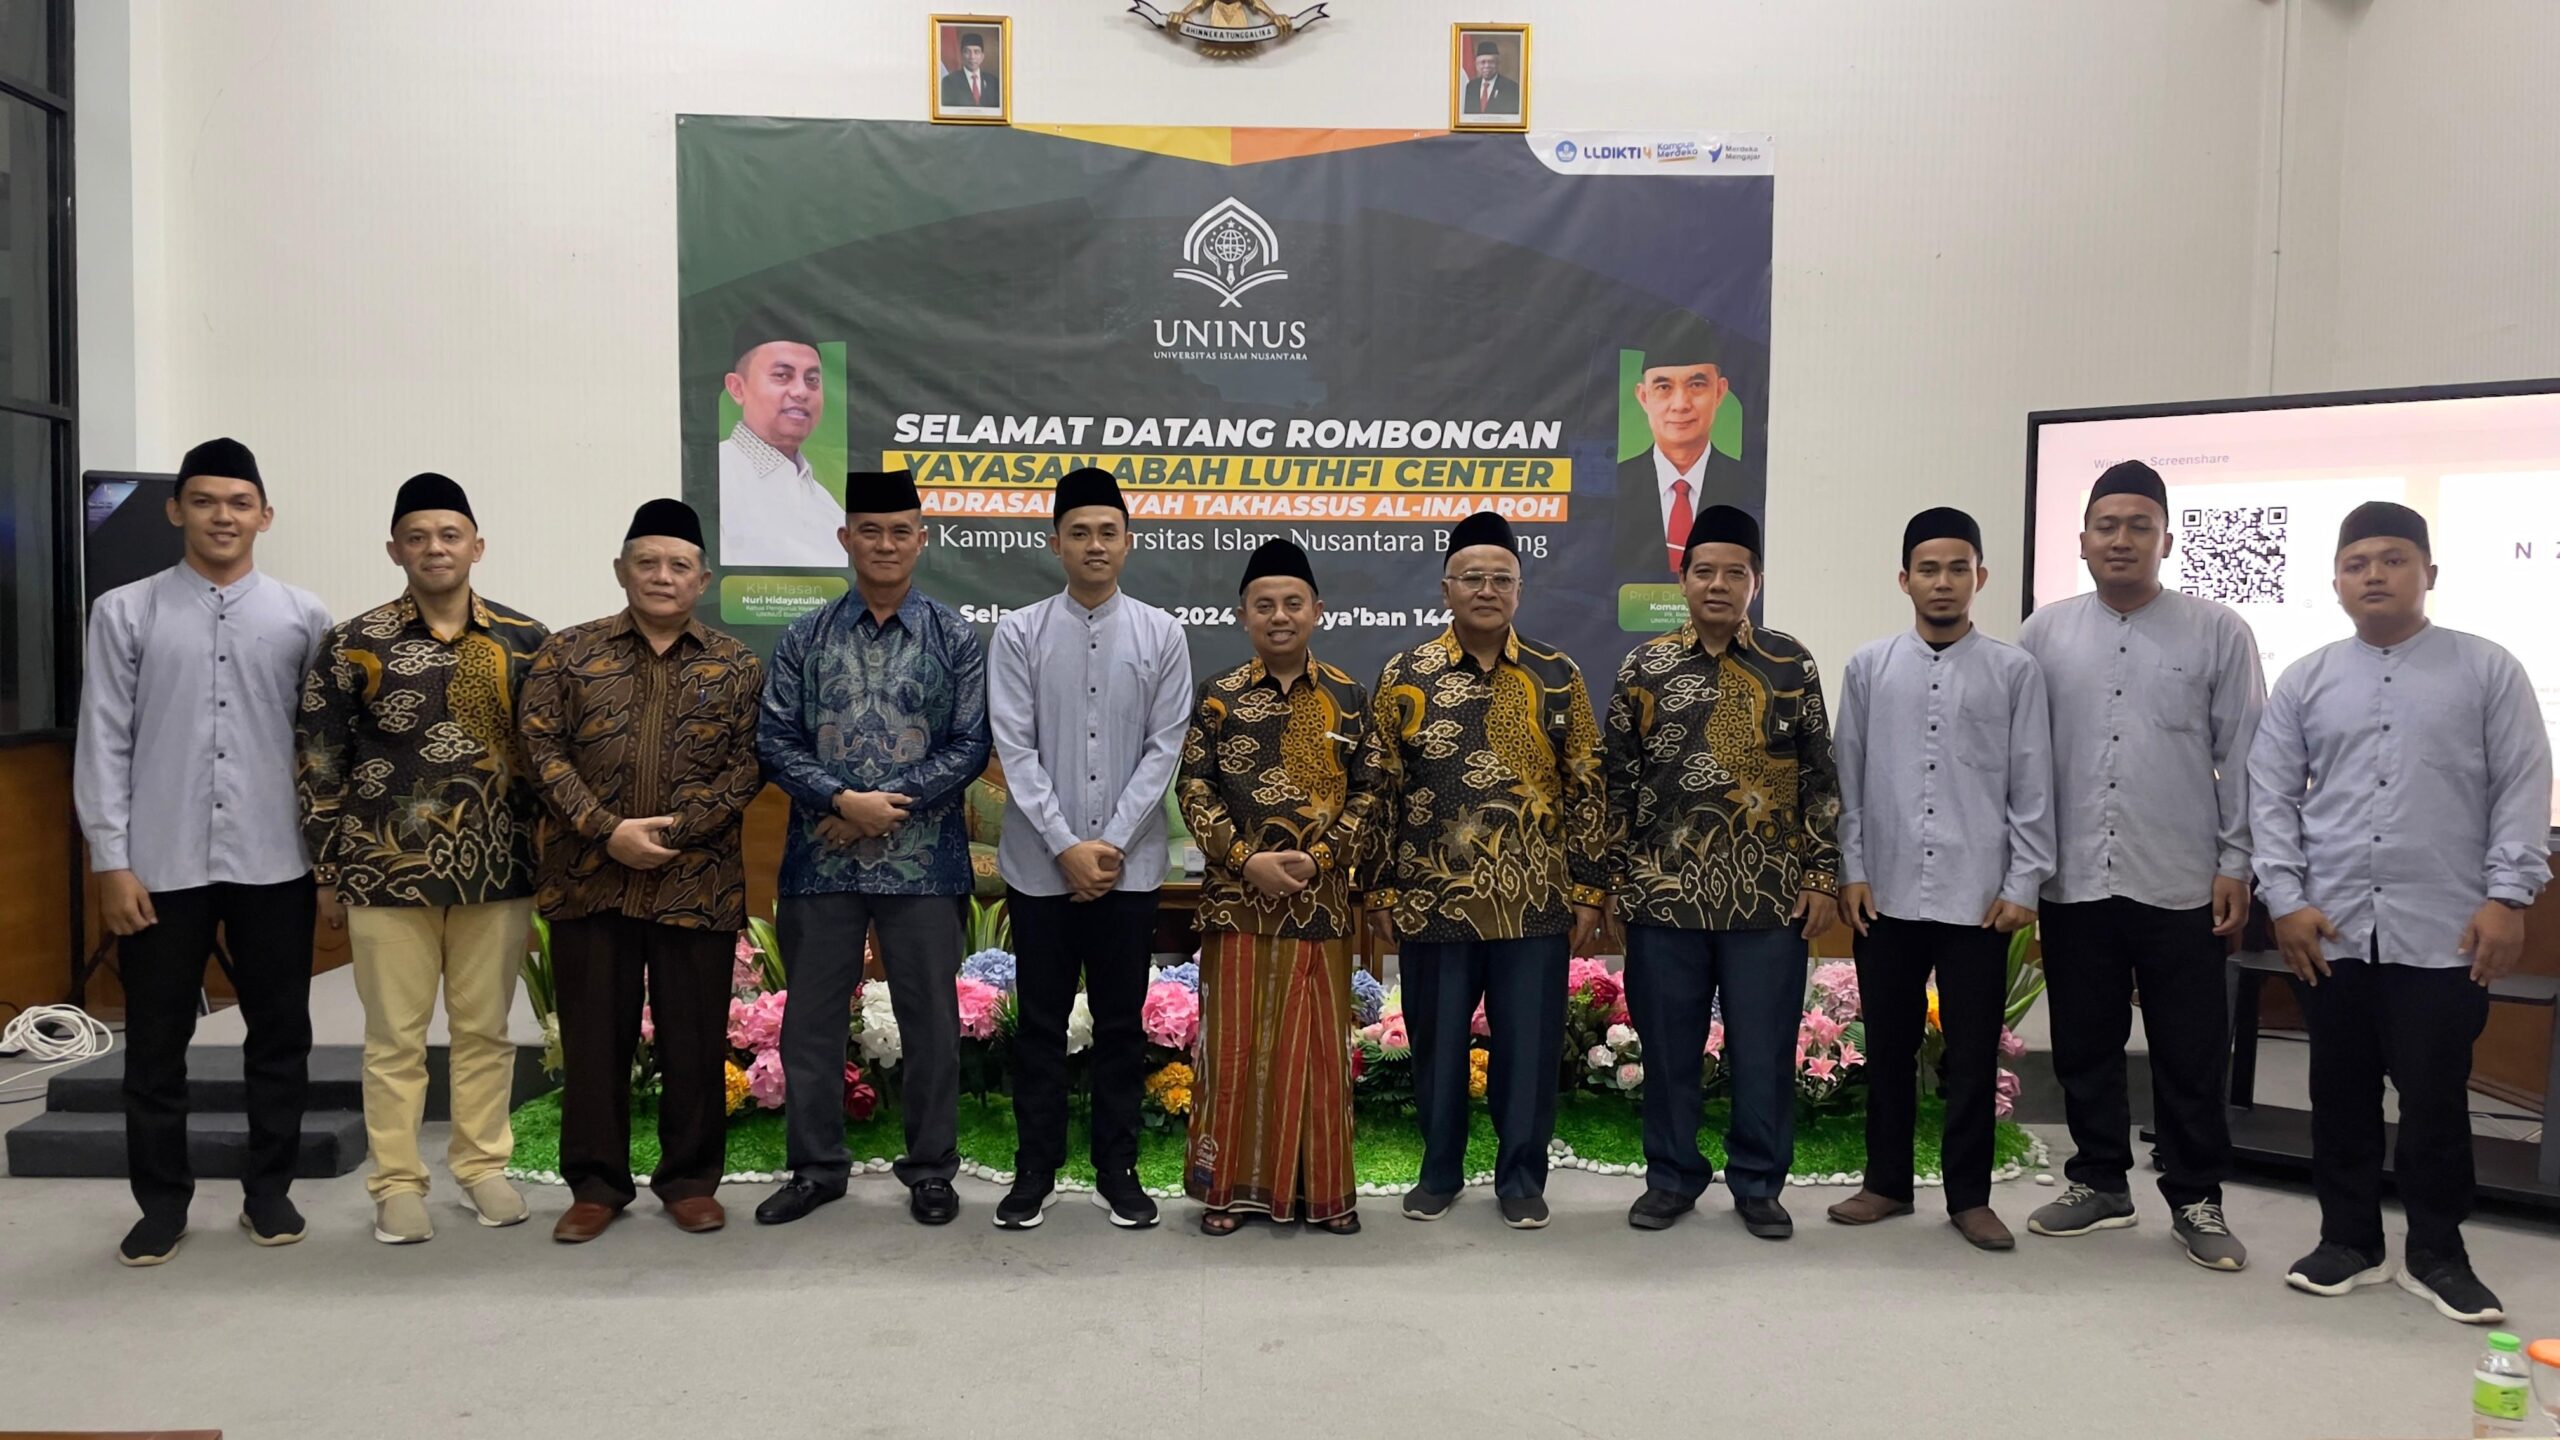 Universitas Islam Nusantara Sambut Hangat Kunjungan dari Madrasah Aliyah Takhassus Al-Inaaroh